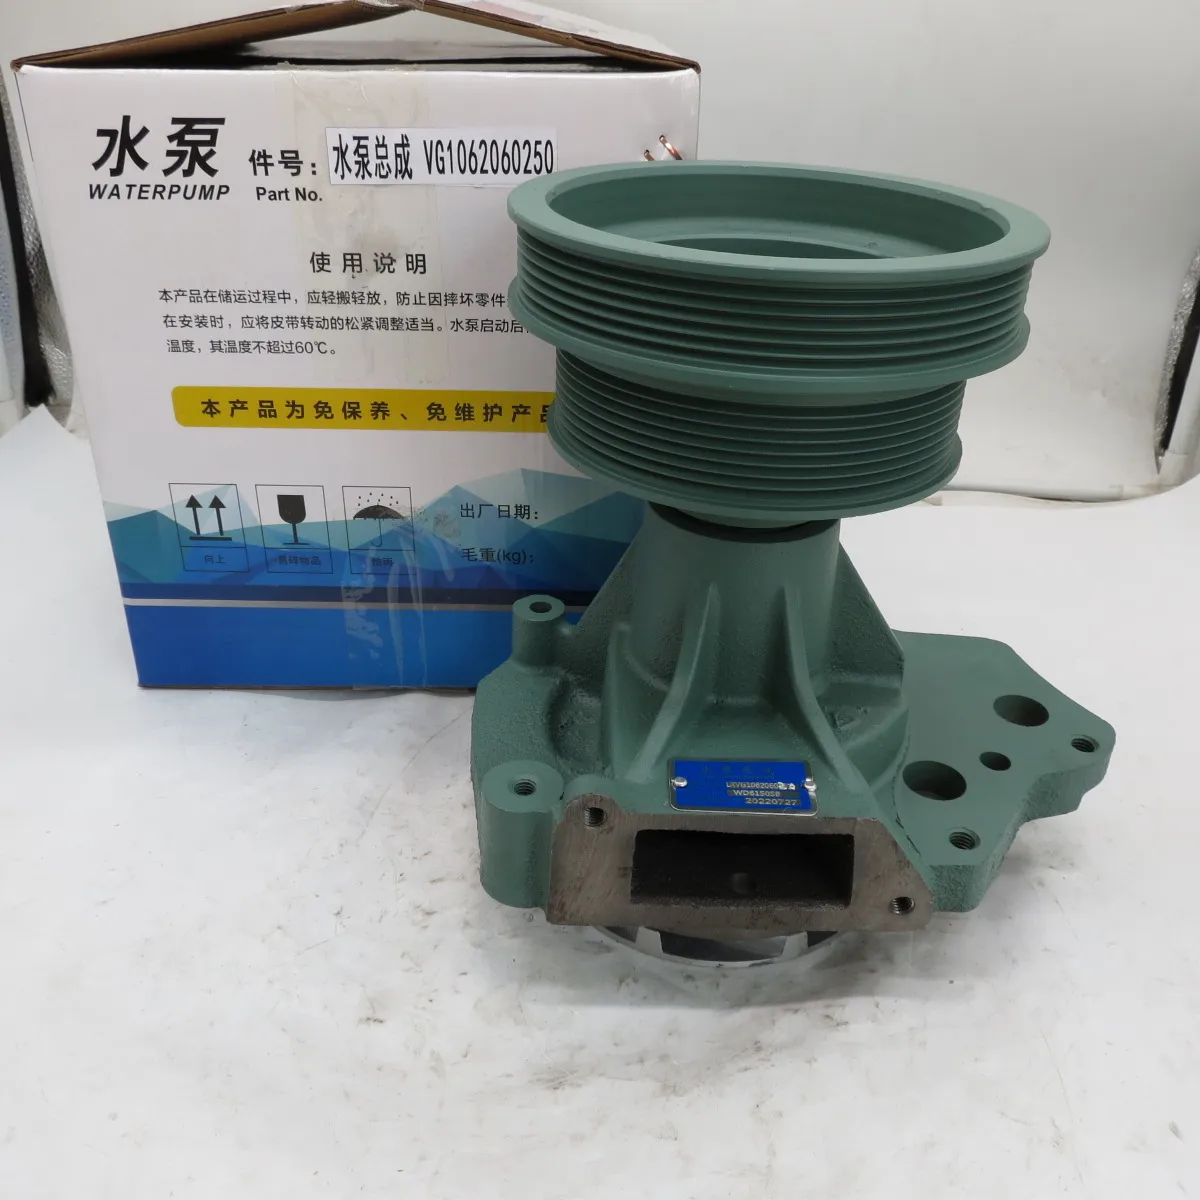 

Diesel engine water pump for car VG1062060250